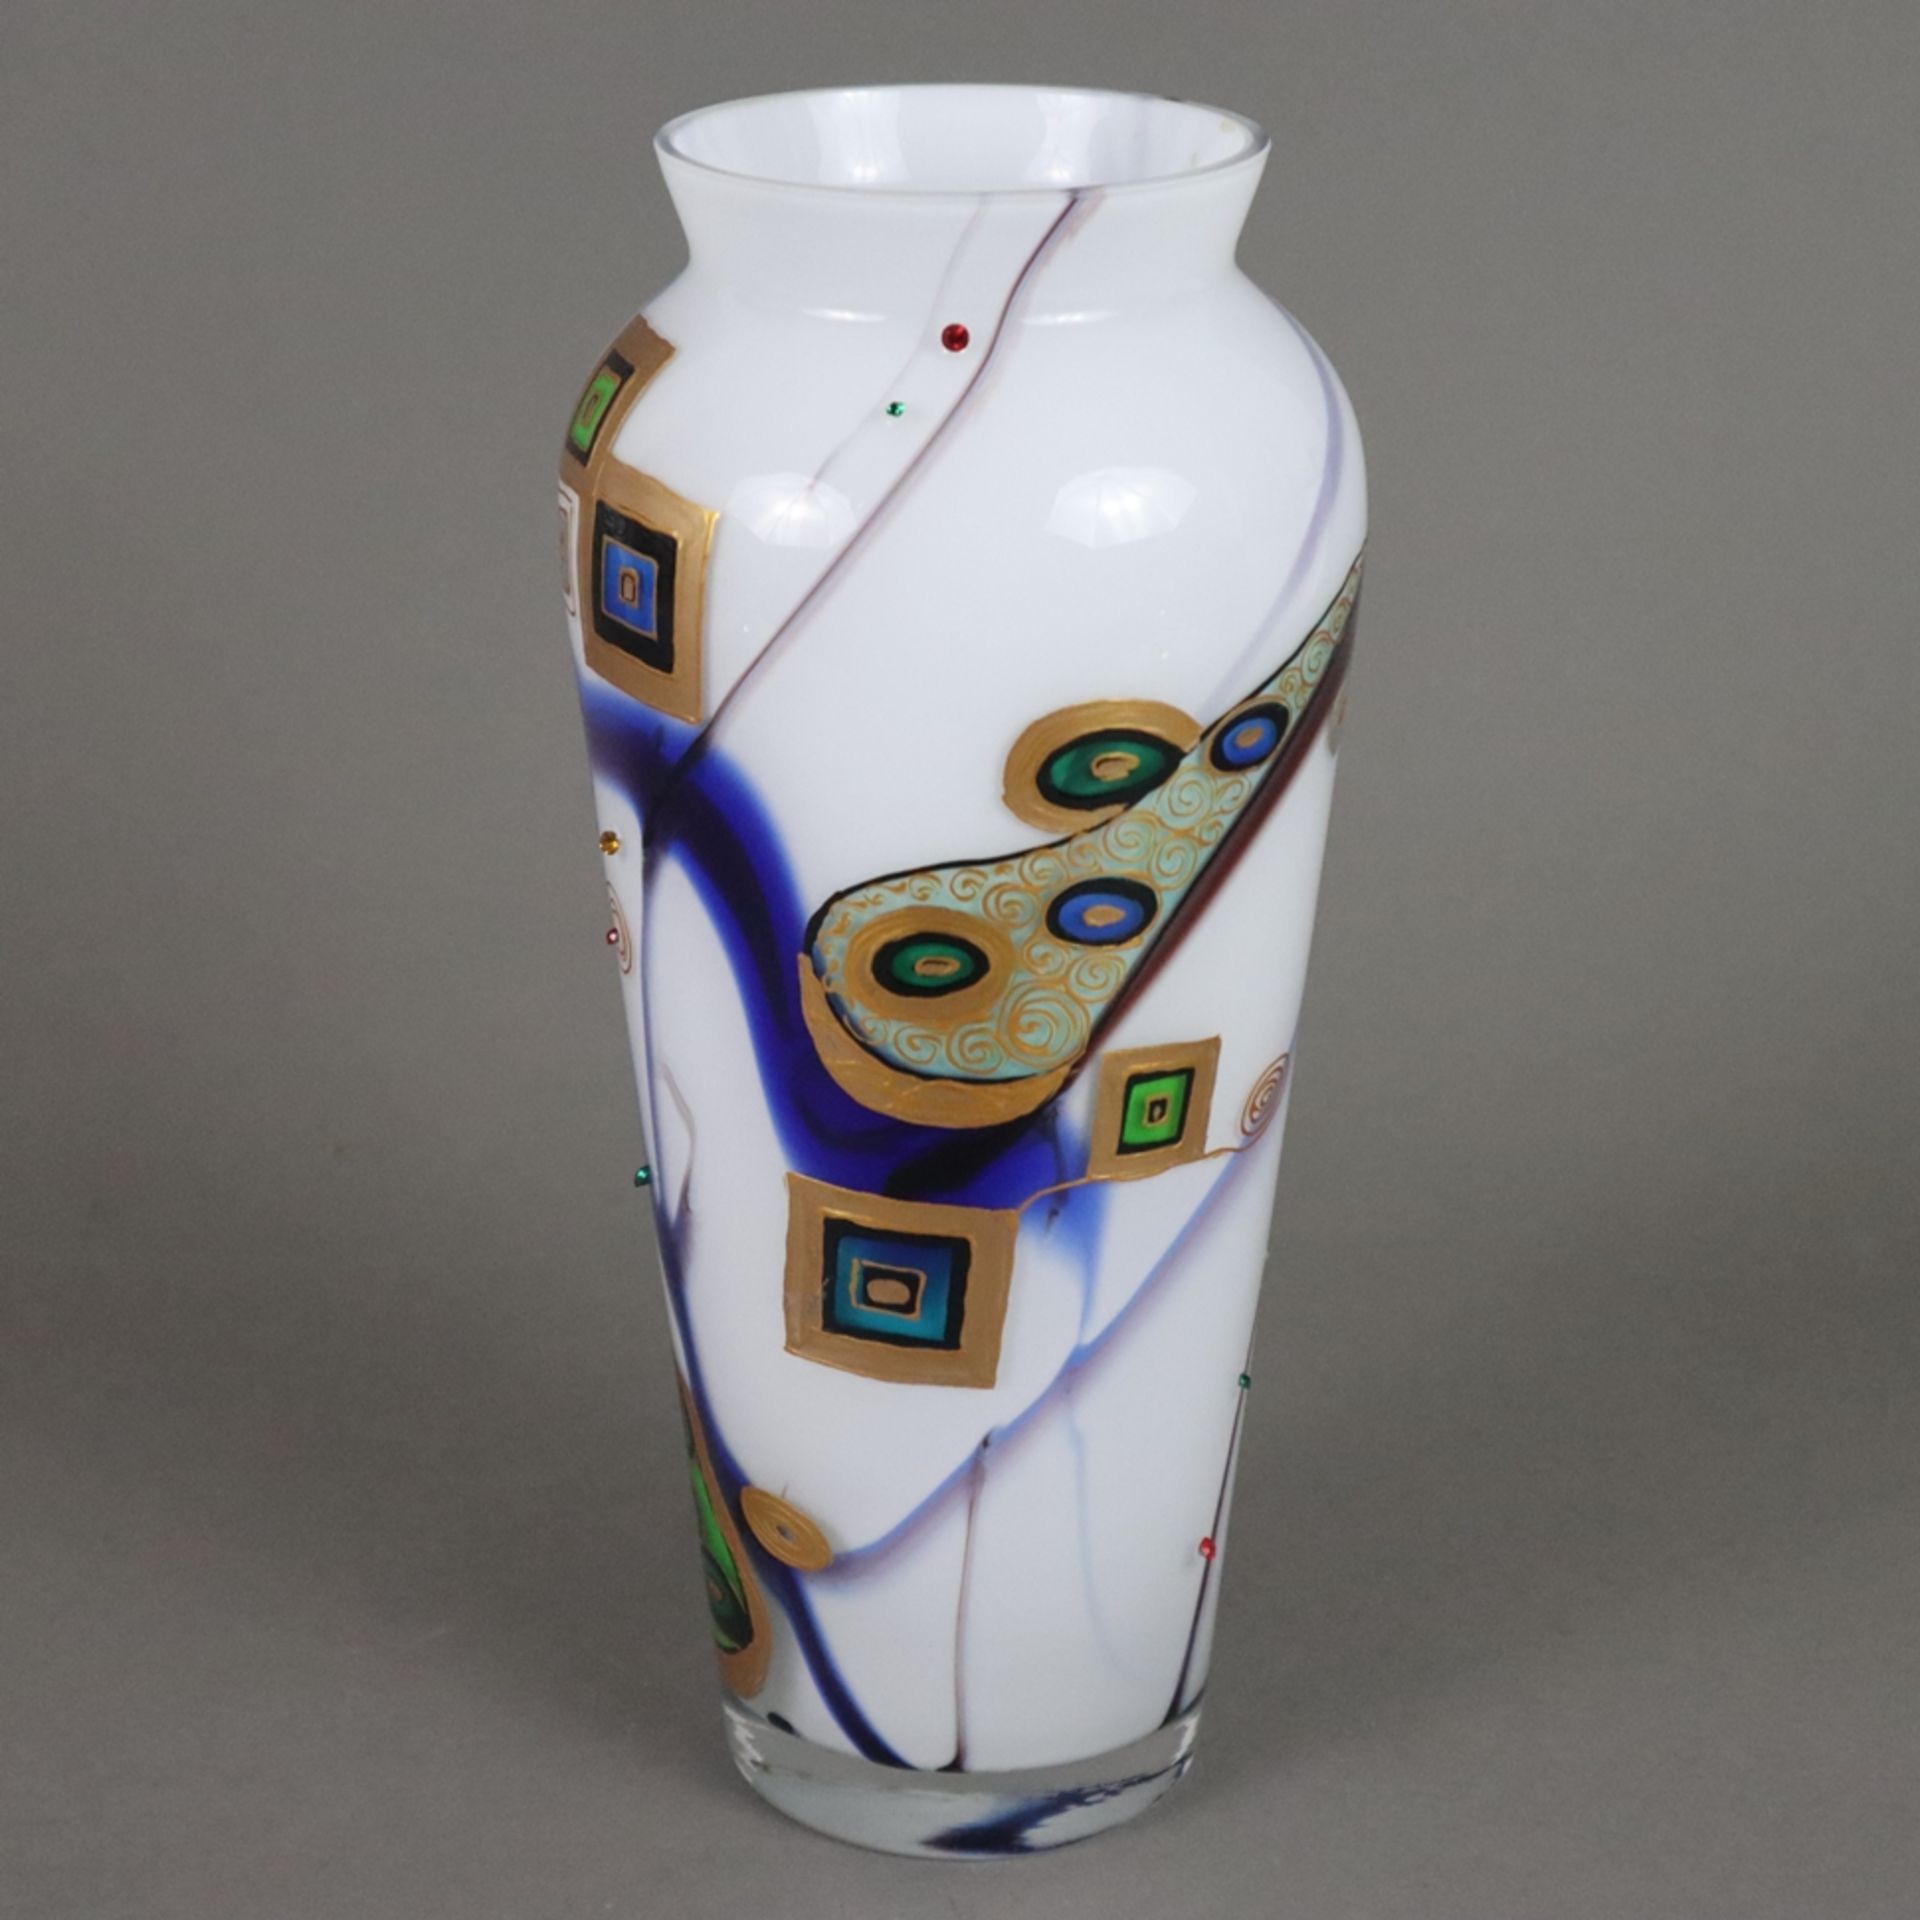 Glasvase mit Klimt-Motiven - nach unten konisch zulaufende Schultervase mit leicht ausgestellter Mü